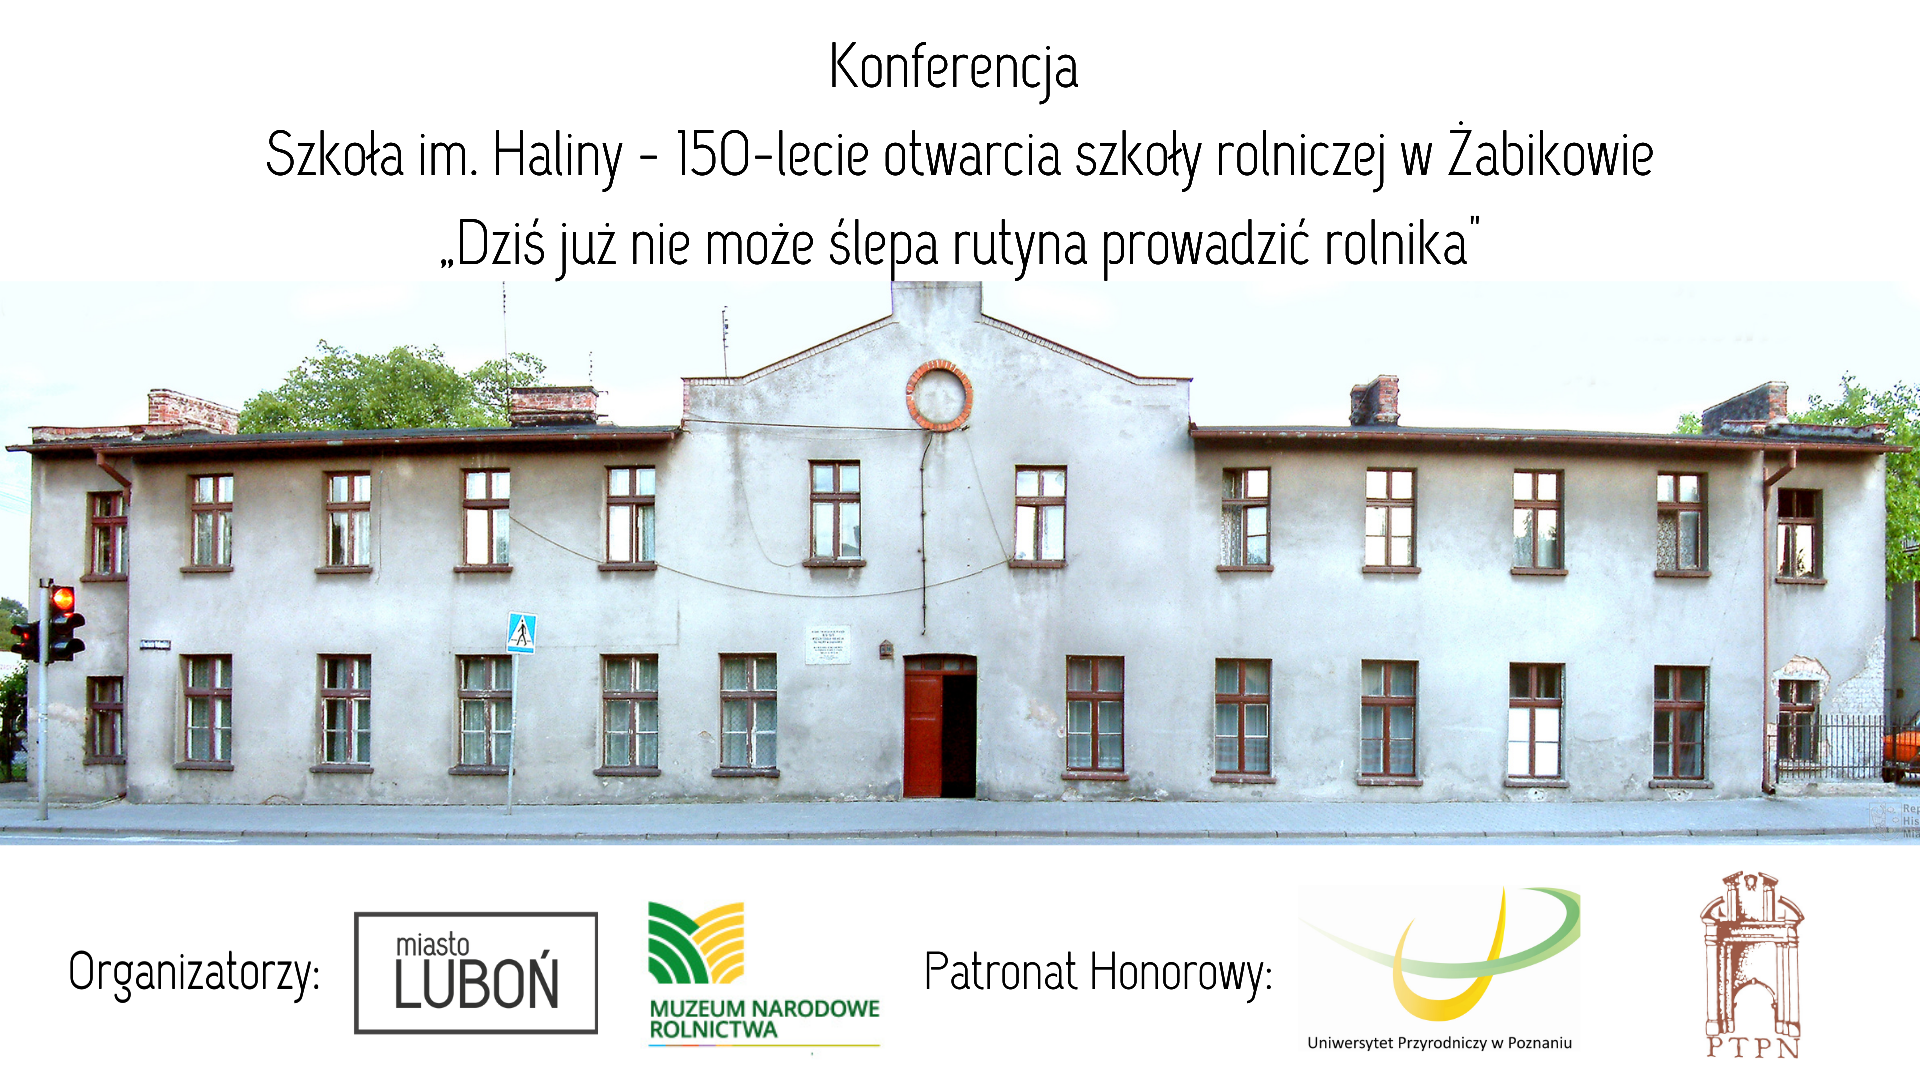 grafika przedstawiająca budynek dawnej Szkoły im. Haliny w Żabikowie wraz z logo organizatorów i patronów honorowych konferencji 